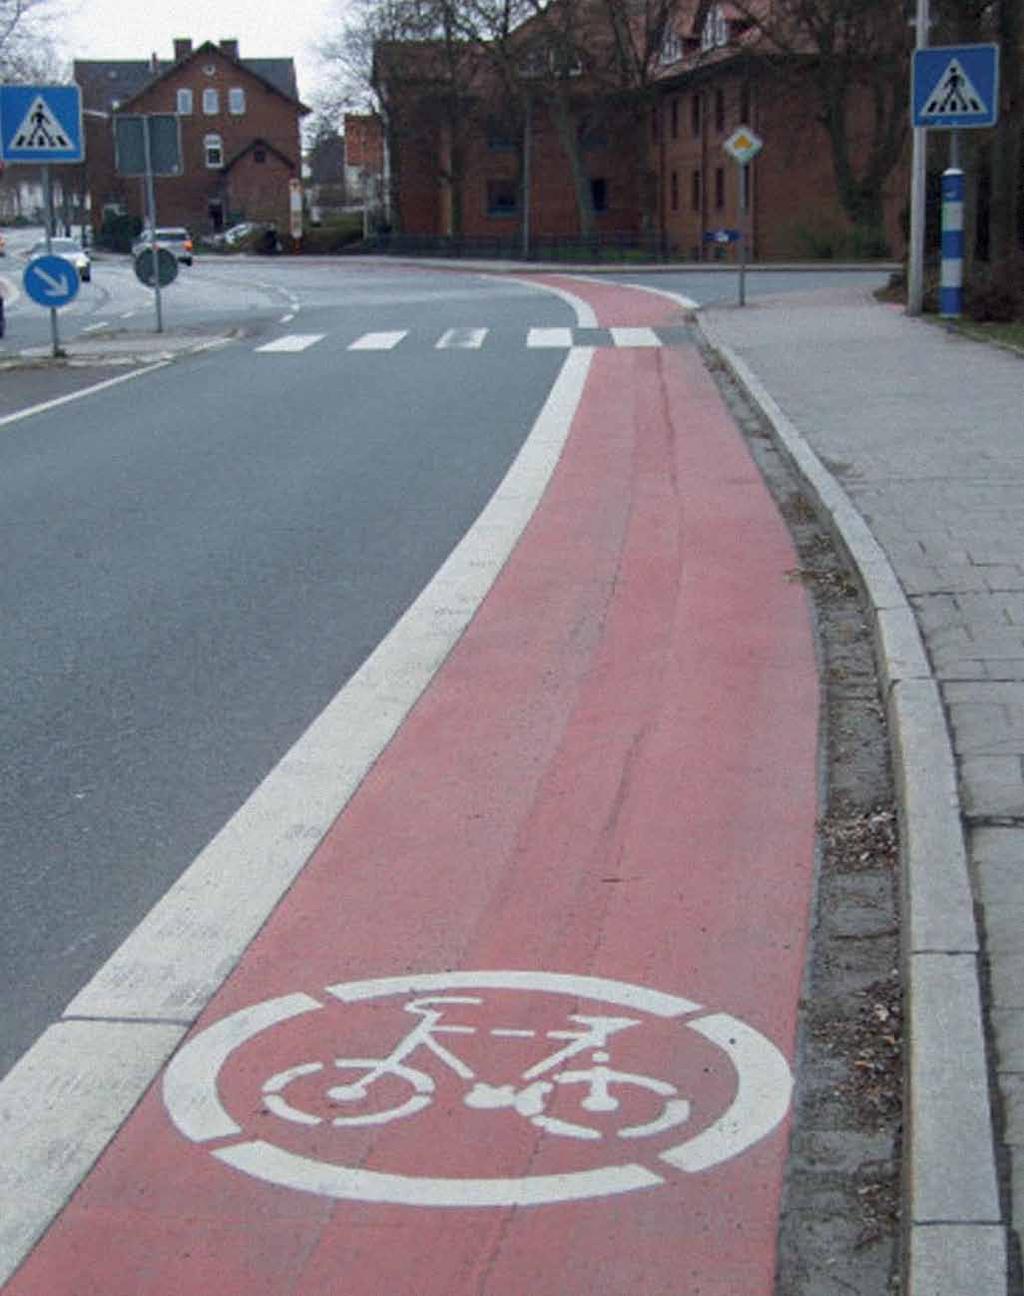 Radfahrstreifen Radfahrstreifen sind auf der Fahrbahn durch eine durchgezogene Linie als Sonderwege für den Radverkehr erkennbar.